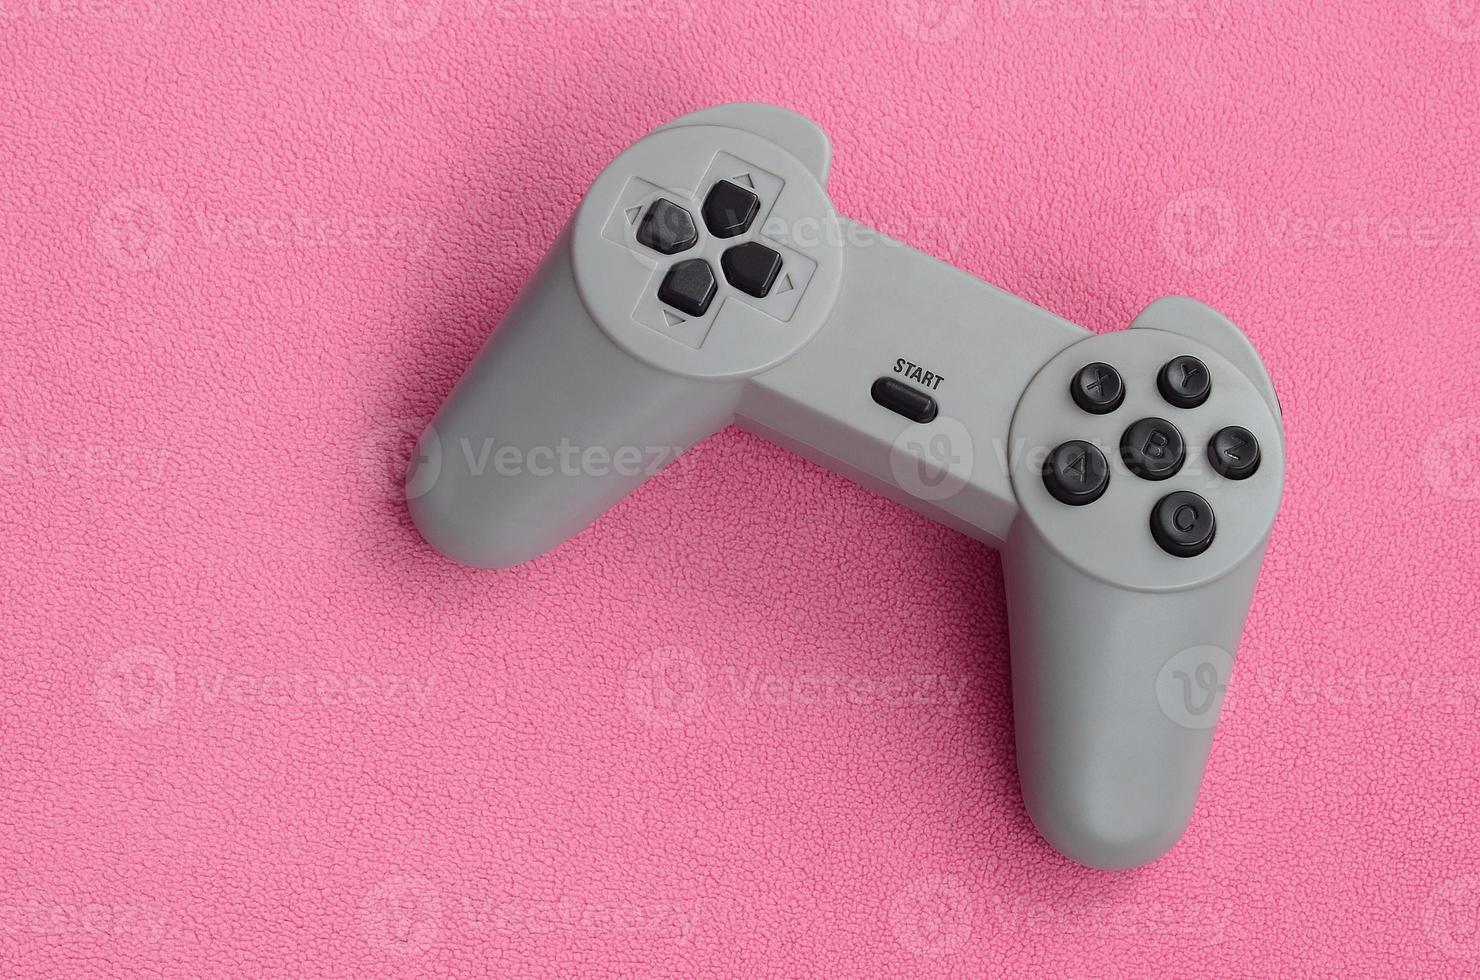 spelar spel begrepp. enda vaddera joystick lögner på de filt av hårig rosa skinna tyg. kontrollant för video spel på en bakgrund textur av ljus rosa mjuk plysch skinna material foto